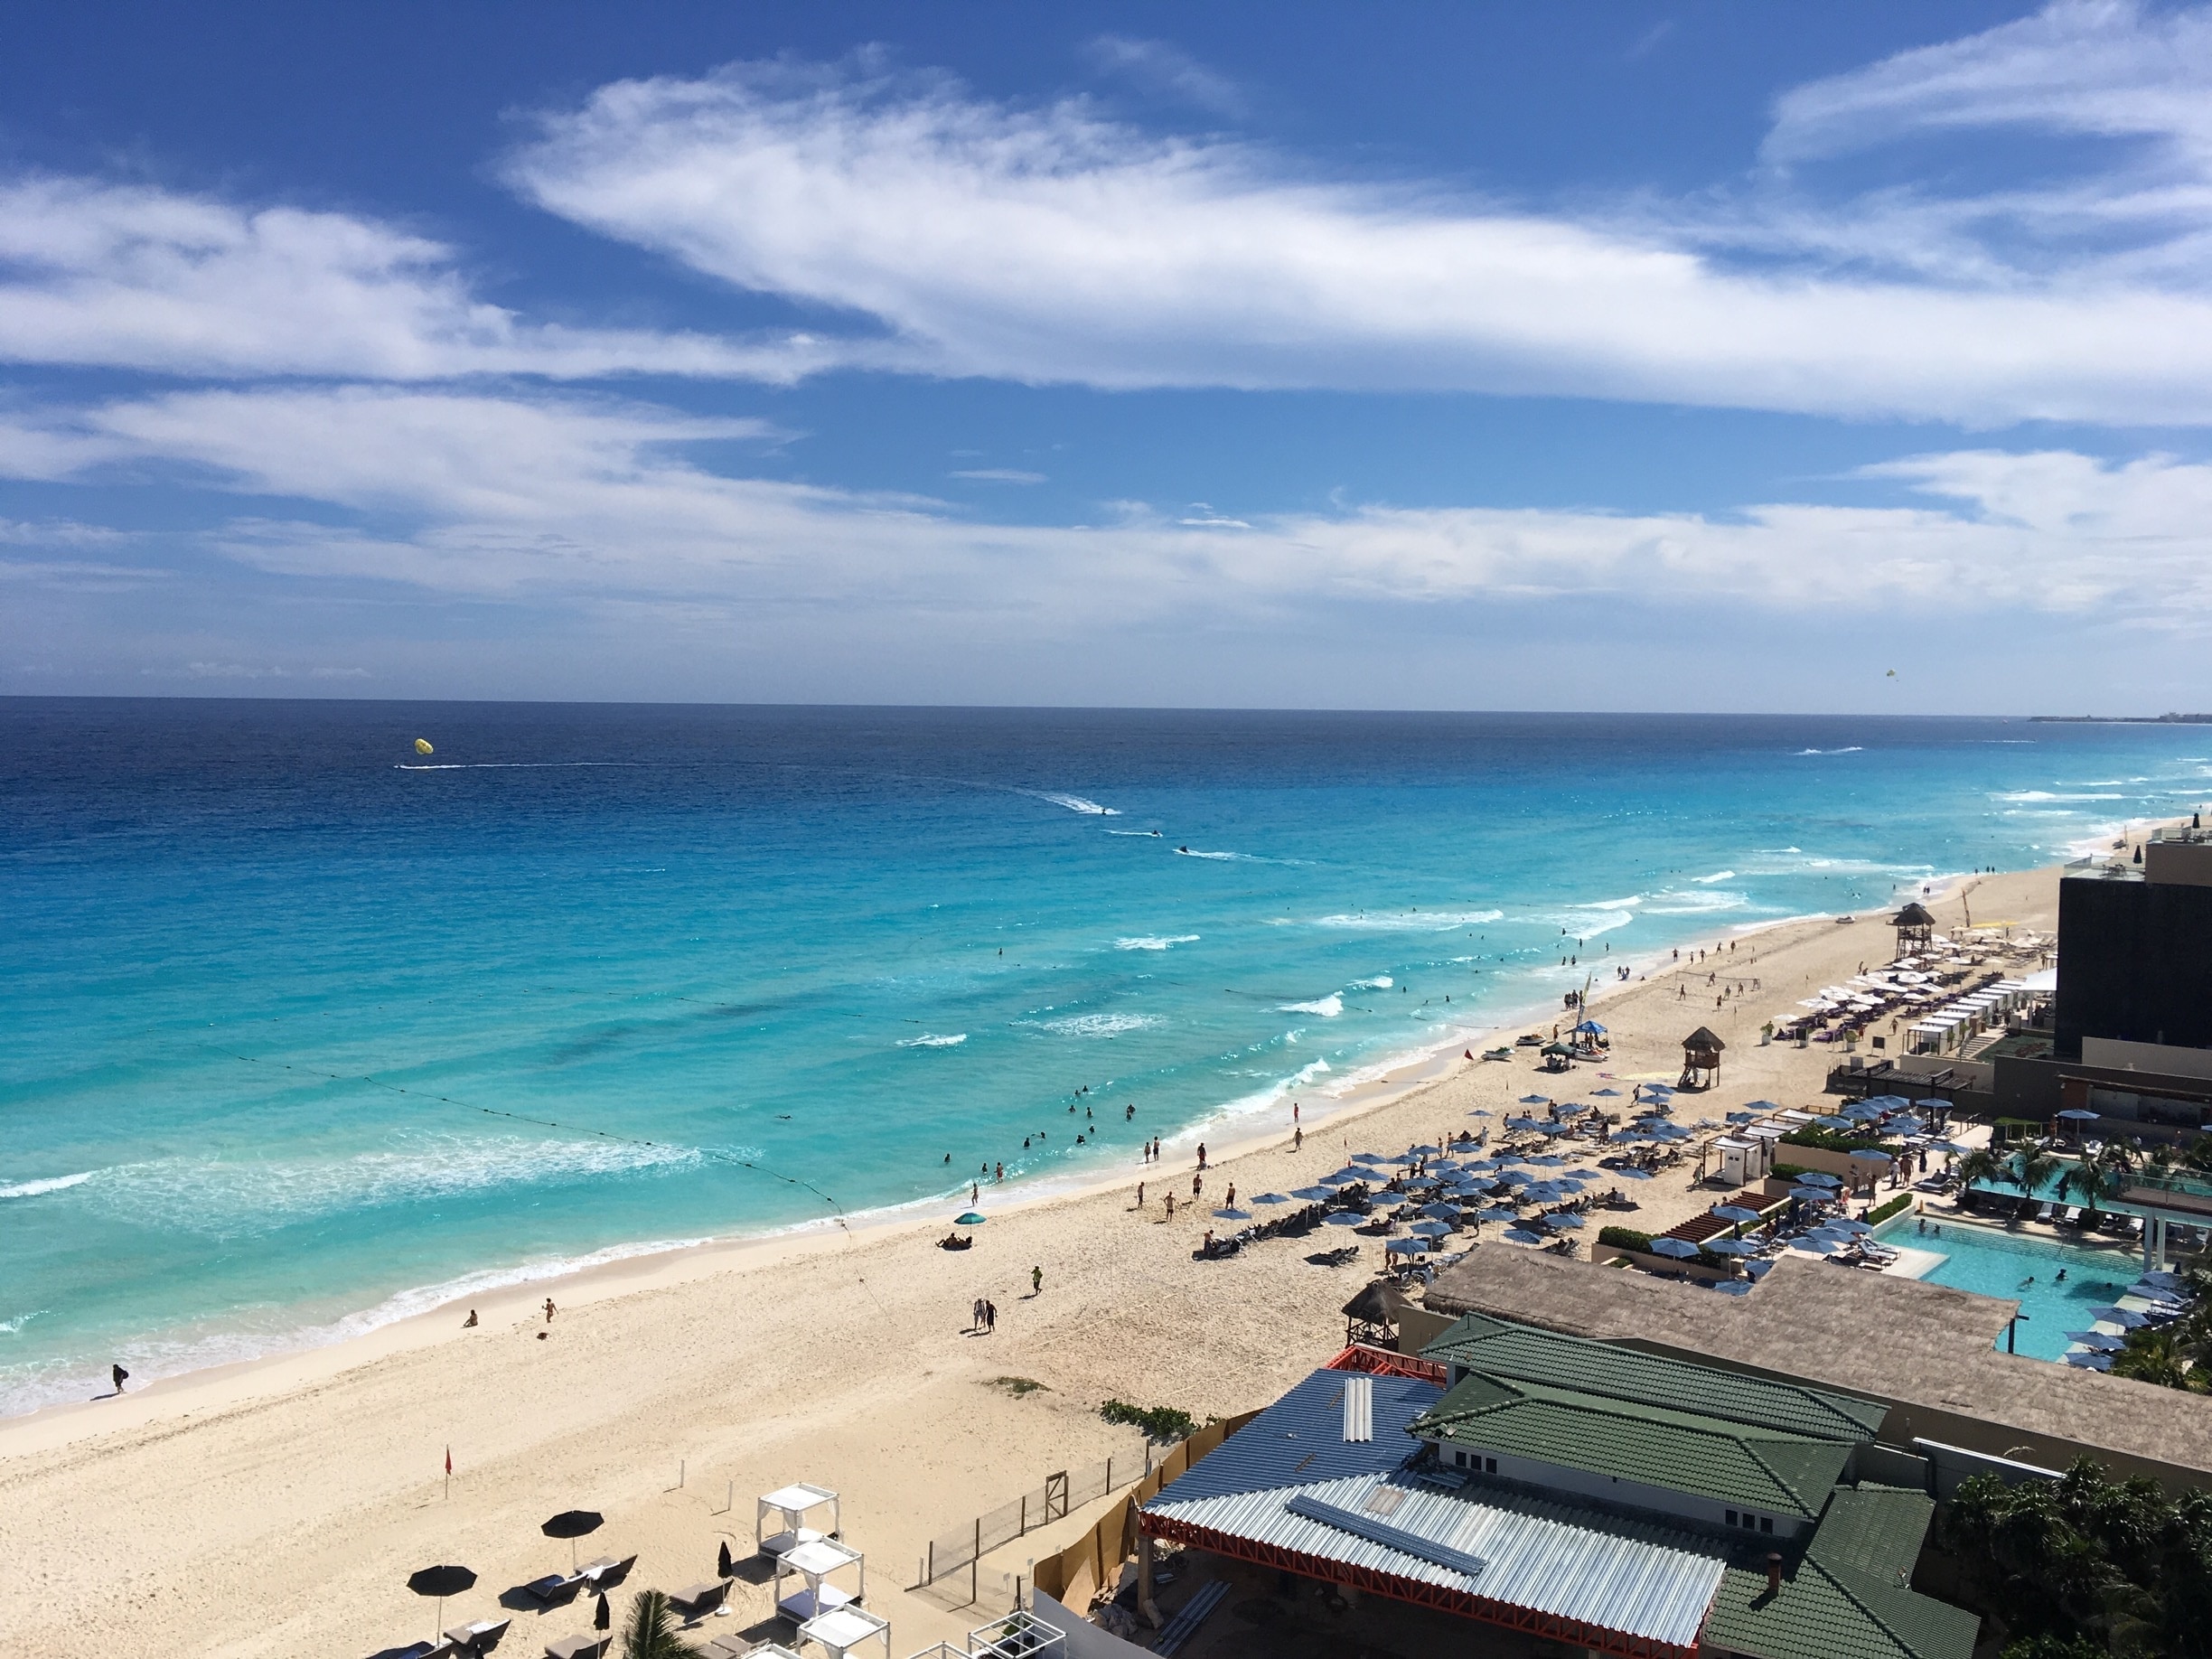 Marlin Beach, Cancun, Mexico